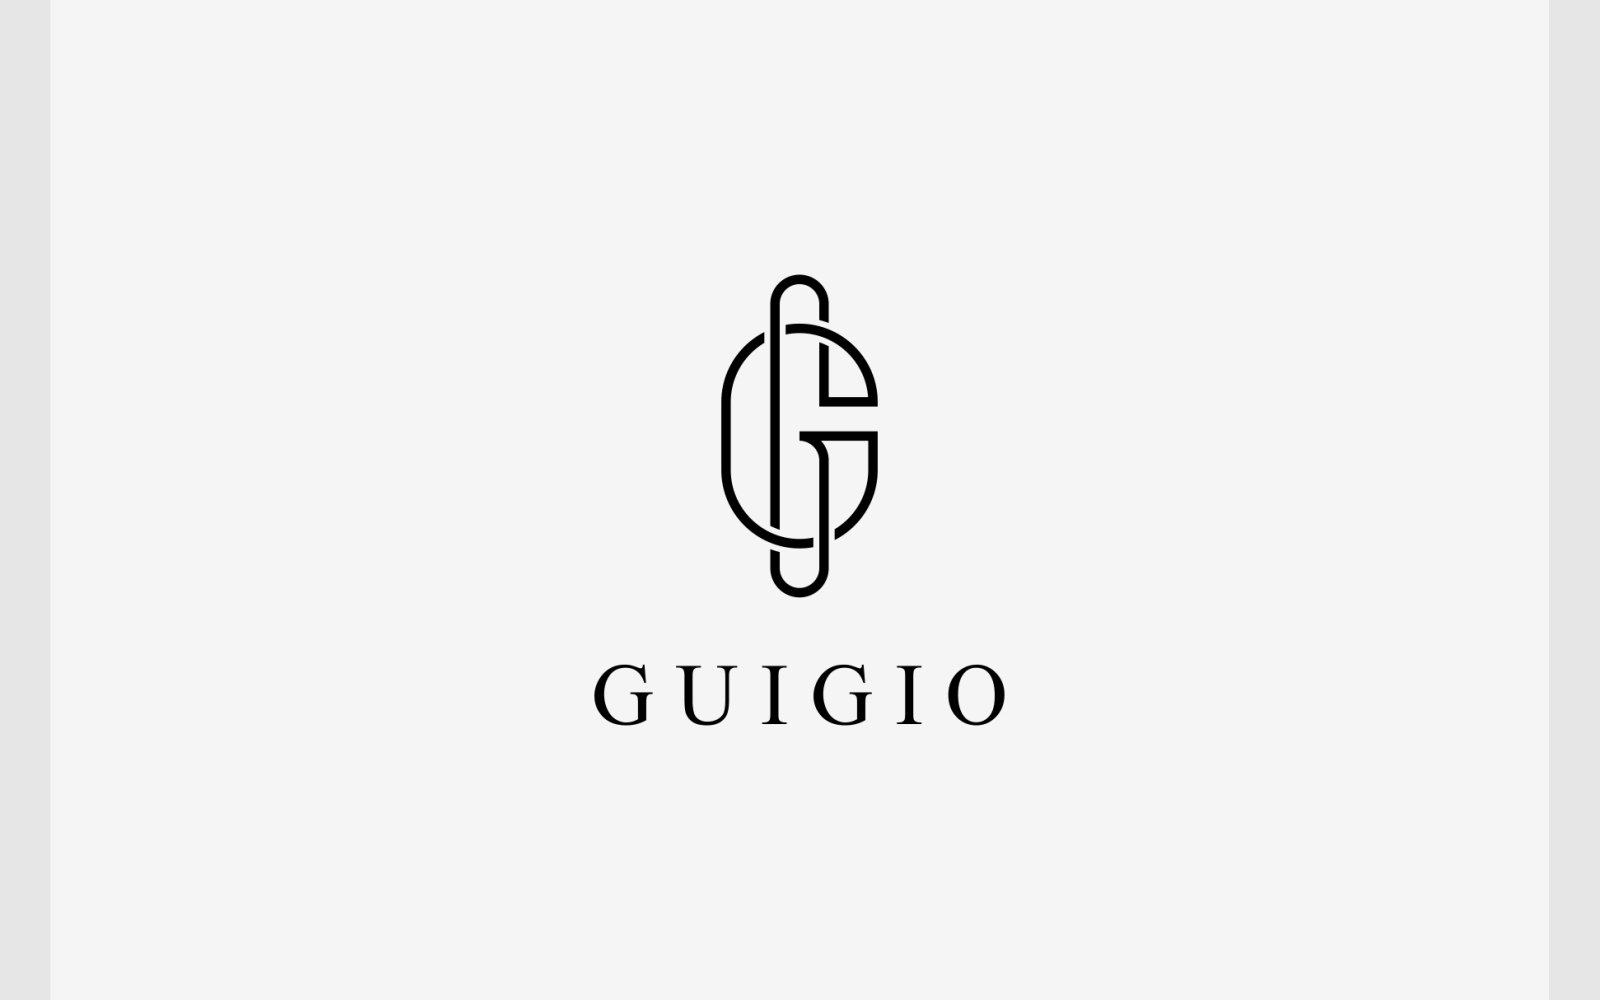 Letter G or GG Luxury Elegant Logo